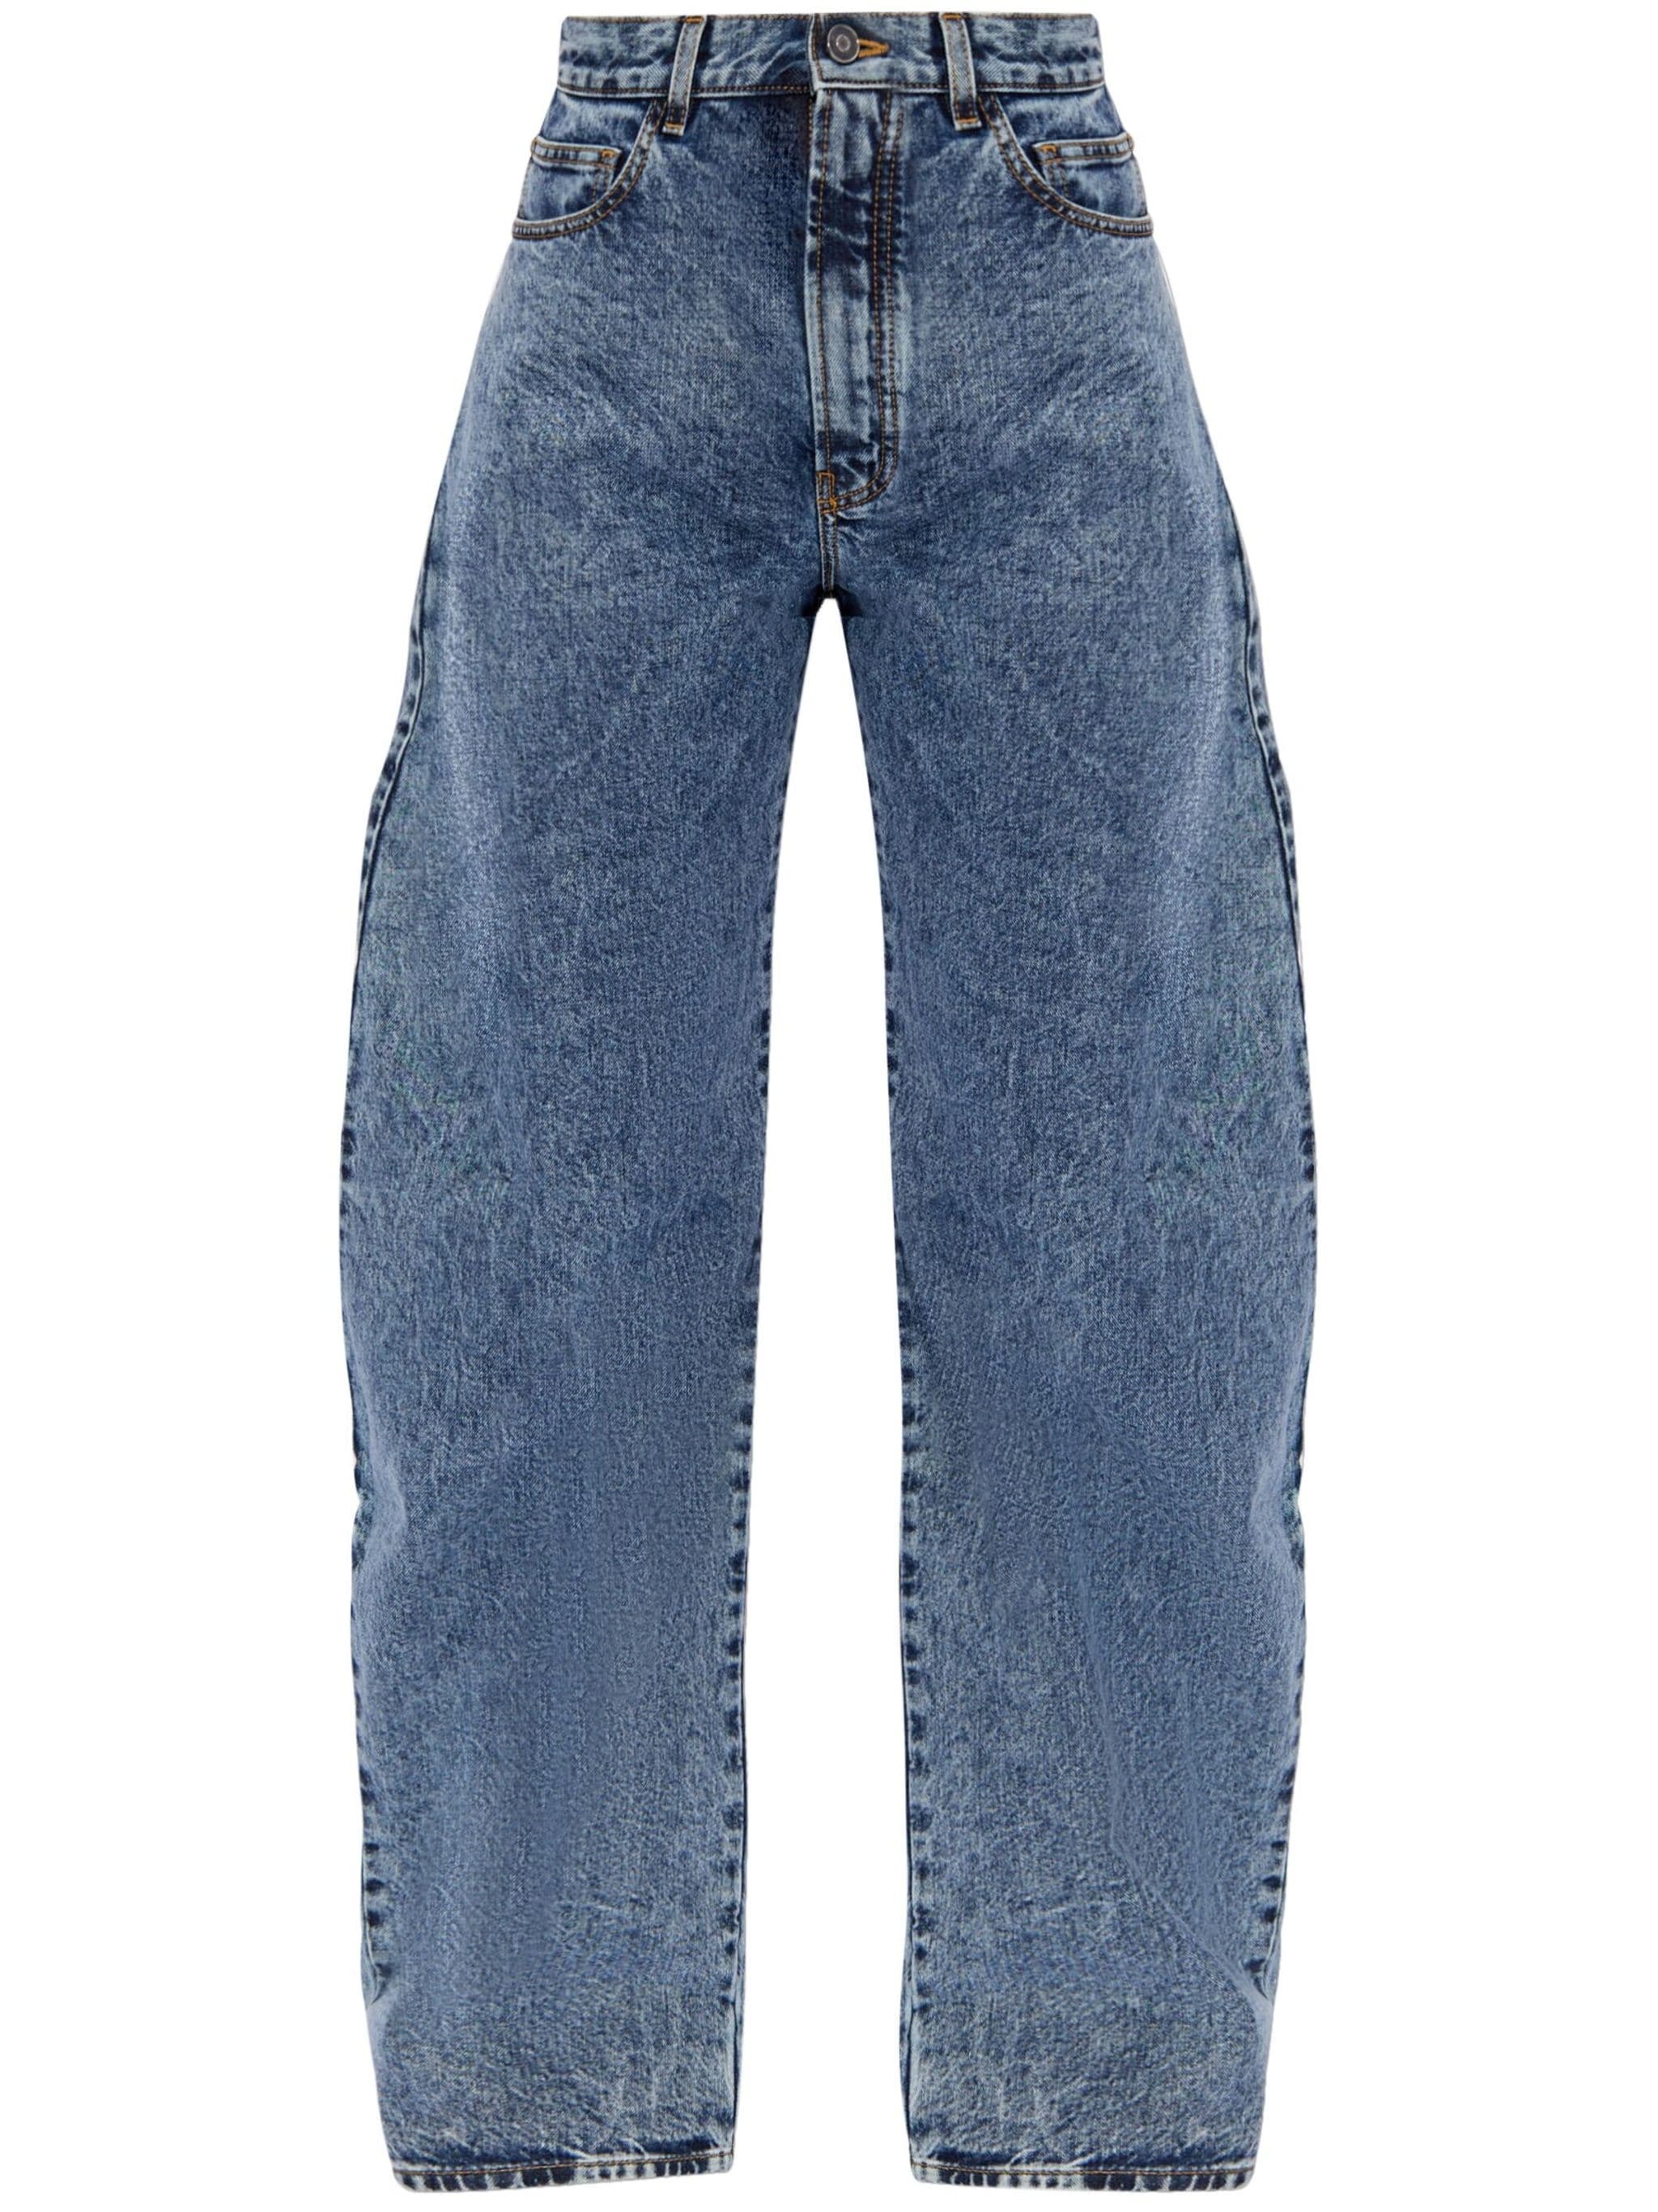 Runde Jeans mit hohem Bund